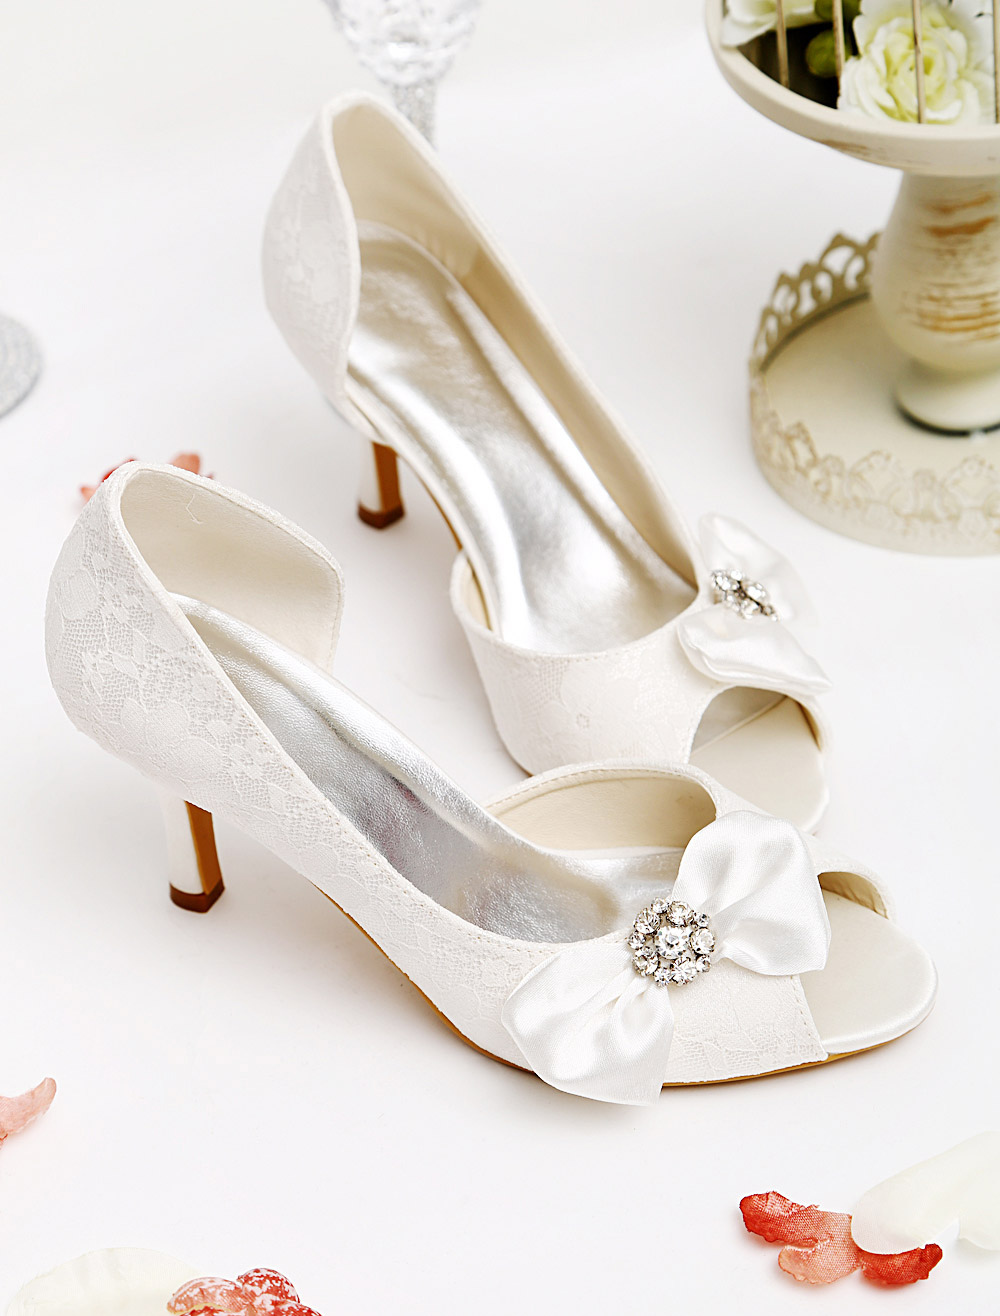 Ivory Wedding Sandals With Peep Toe - Milanoo.com